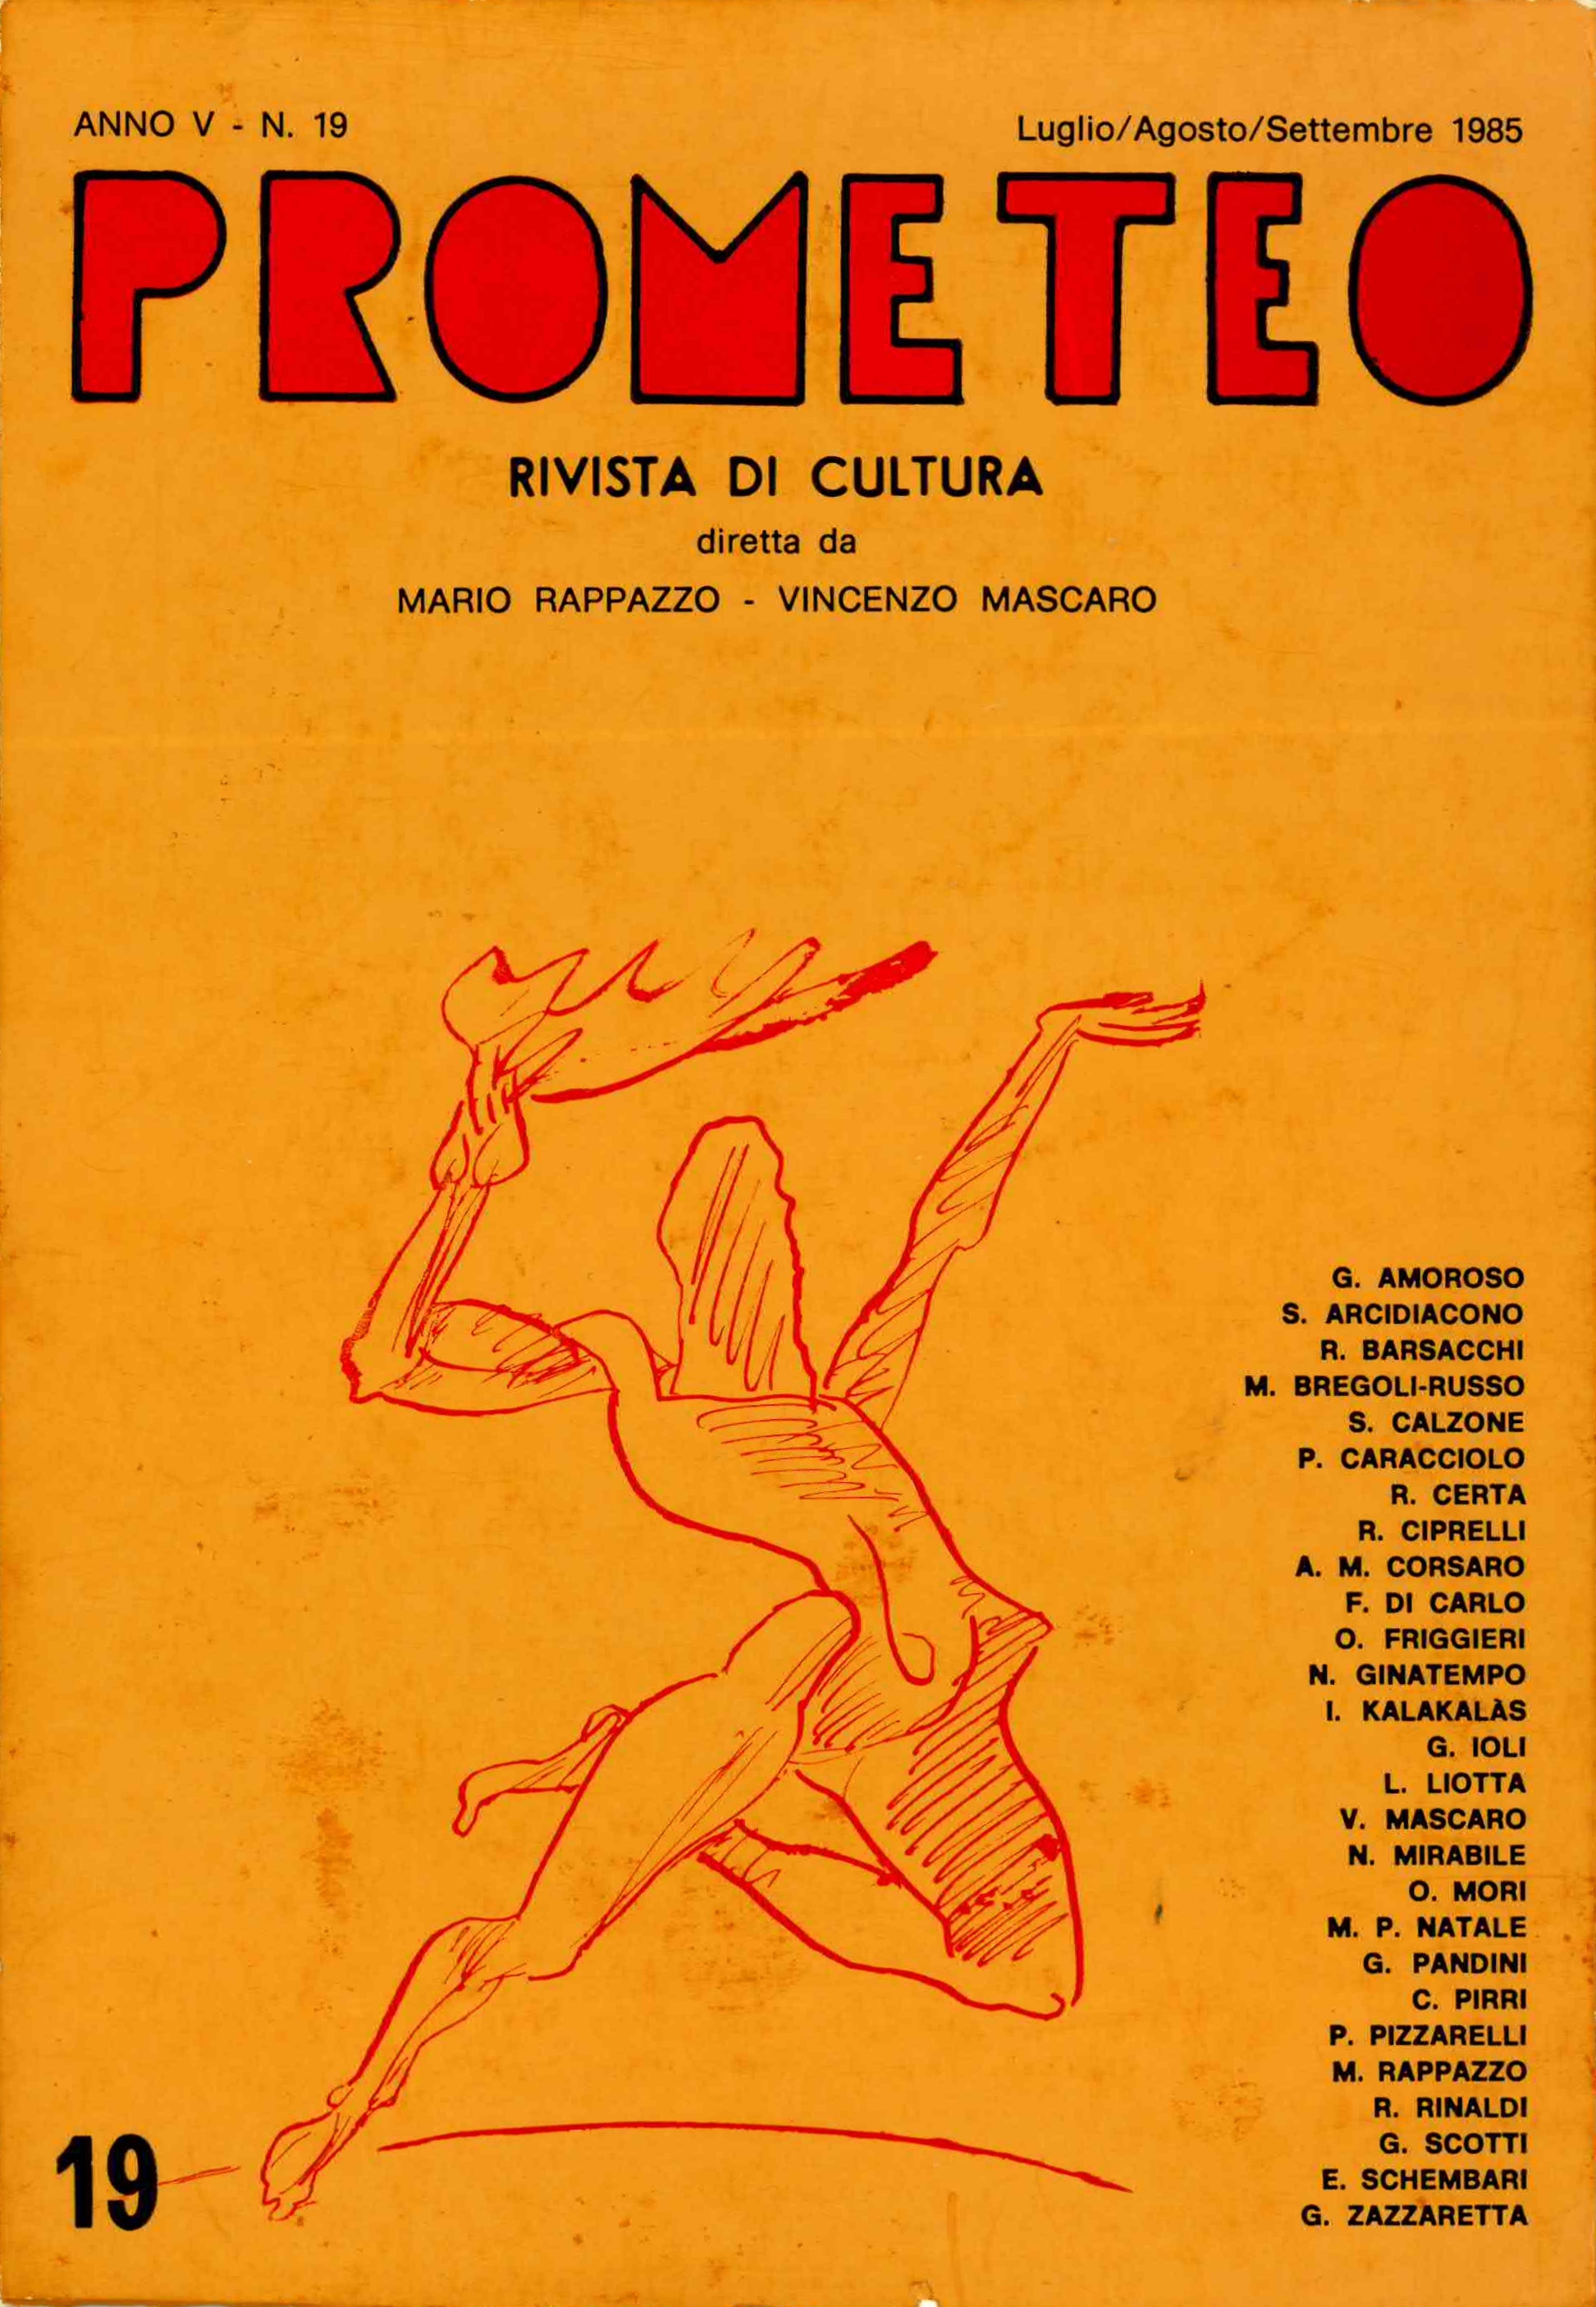 Una seconda edizione del racconto su una rivista di cultura.